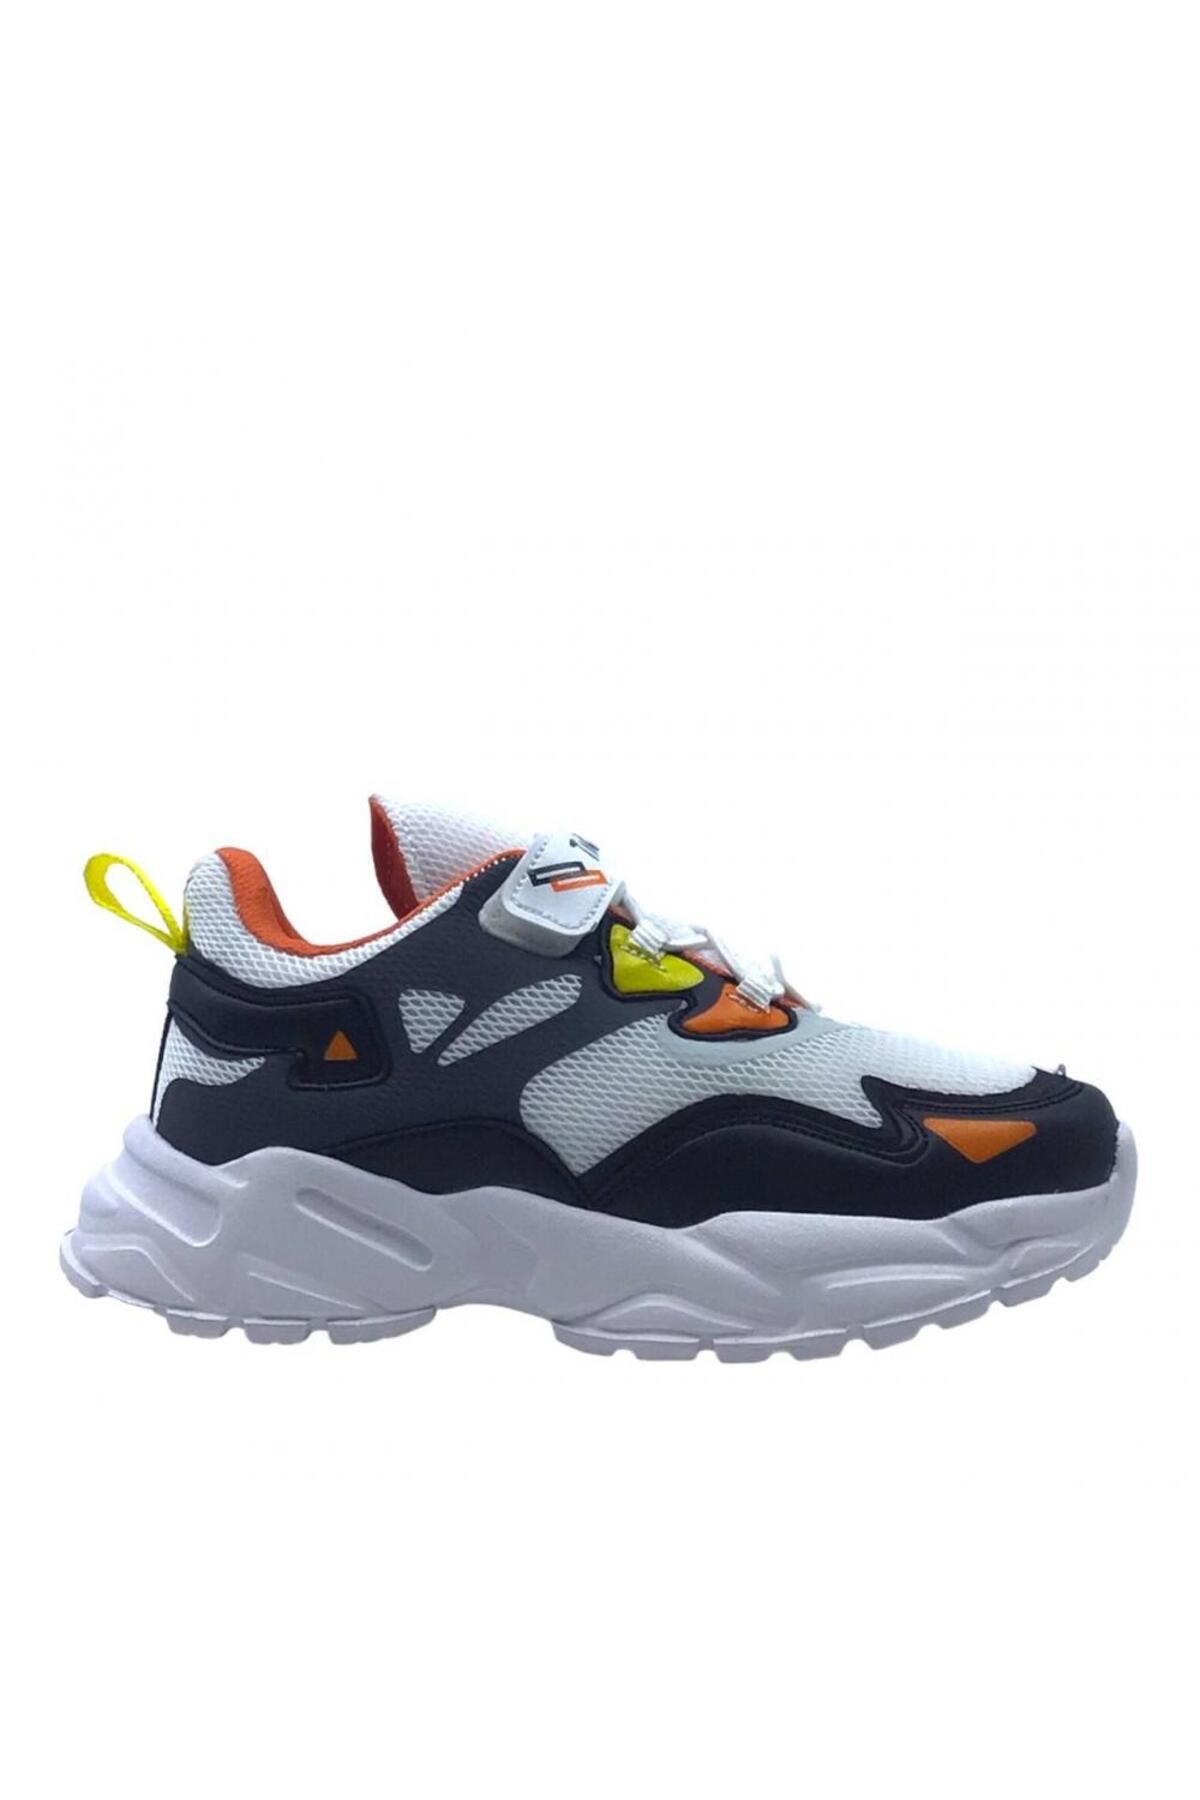 innsteal Beyaz- Turuncu- Laci Çocuk Sneaker Lastikli-Cırtlı Günlük Erkek Çocuk Spor Ayakkabı